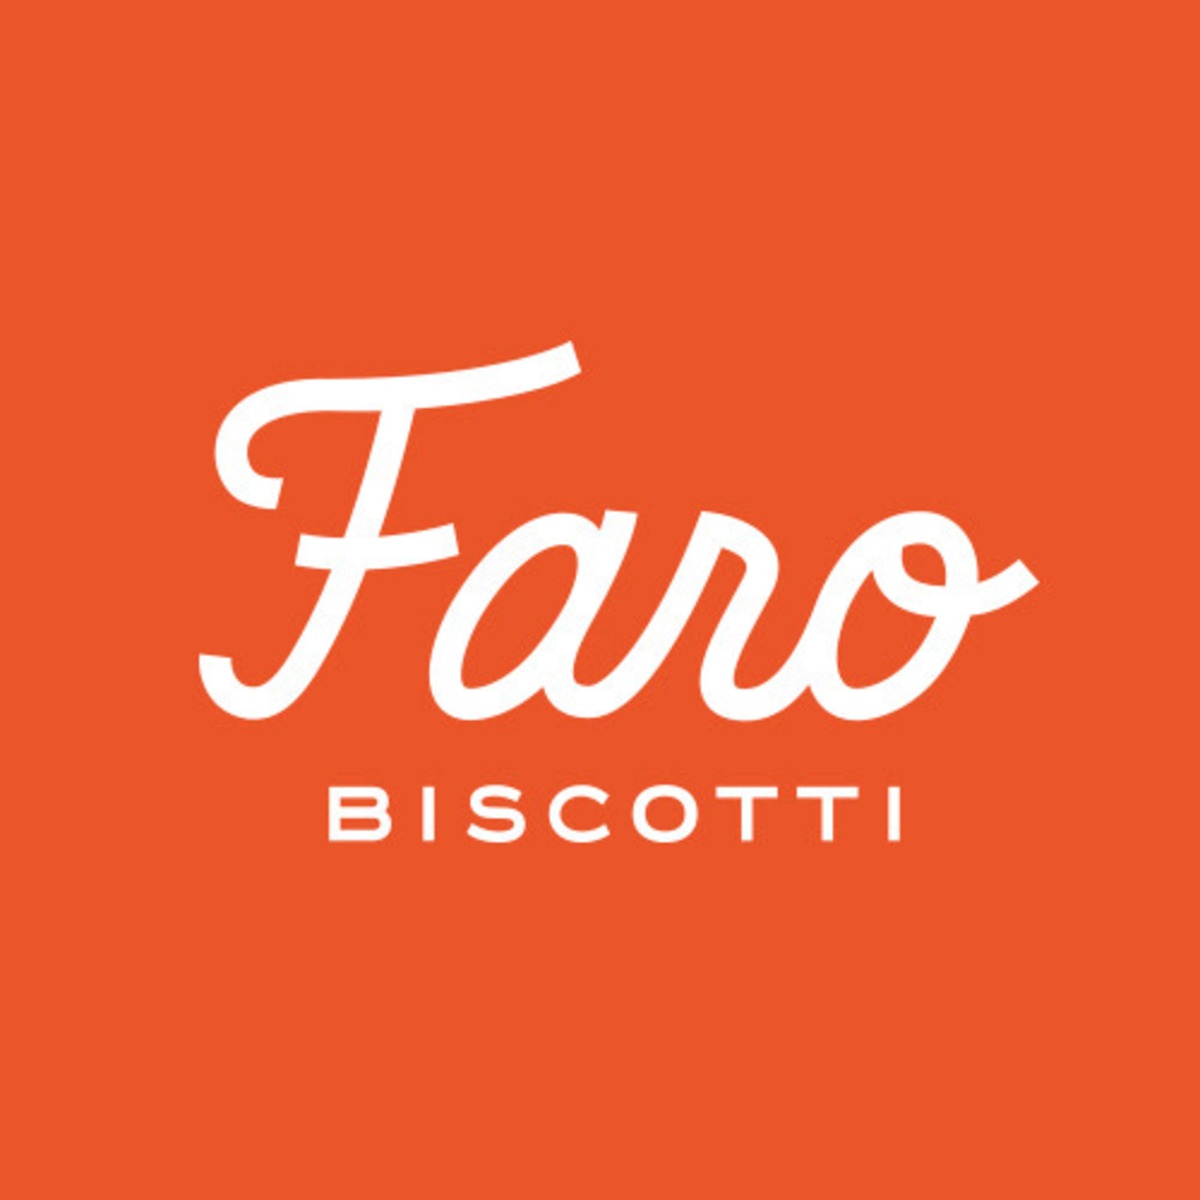 Faro_biscotti